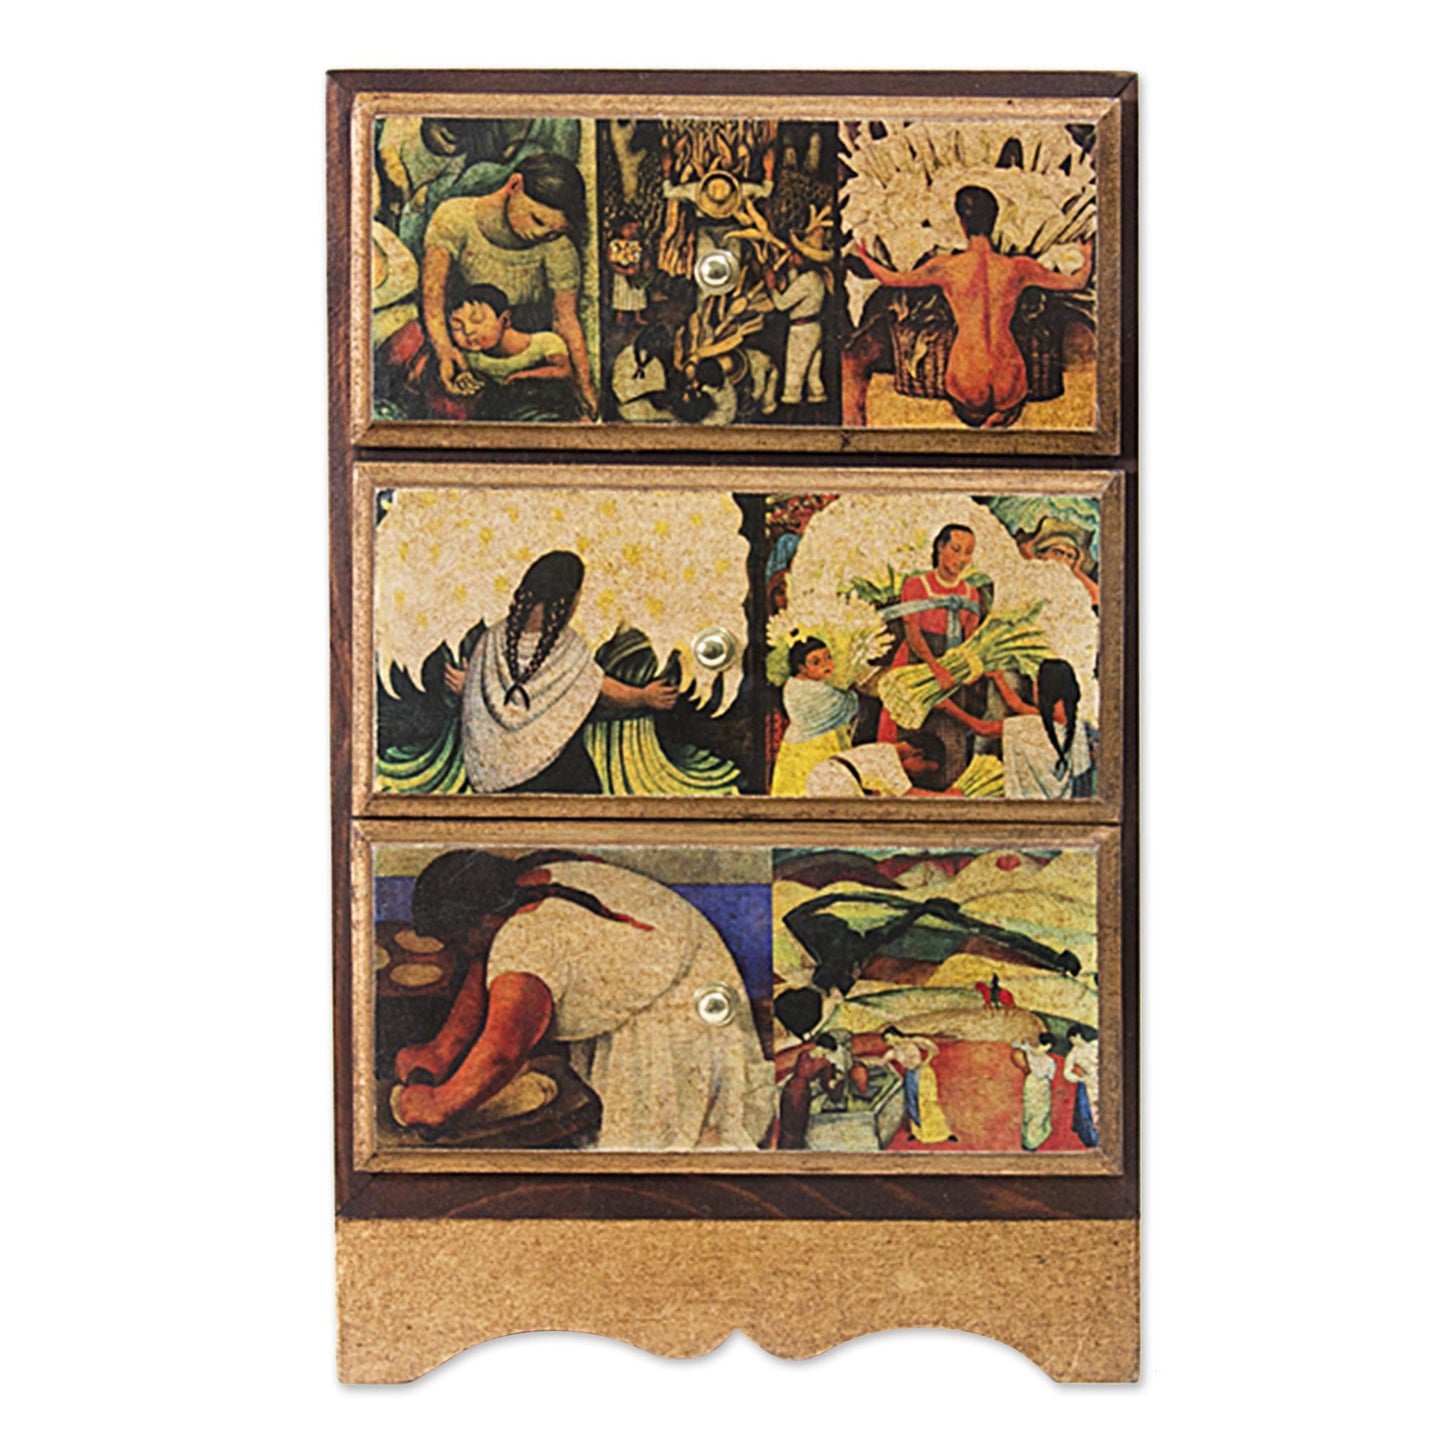 Diego Rivera's Mexico Frida Jewelry Box